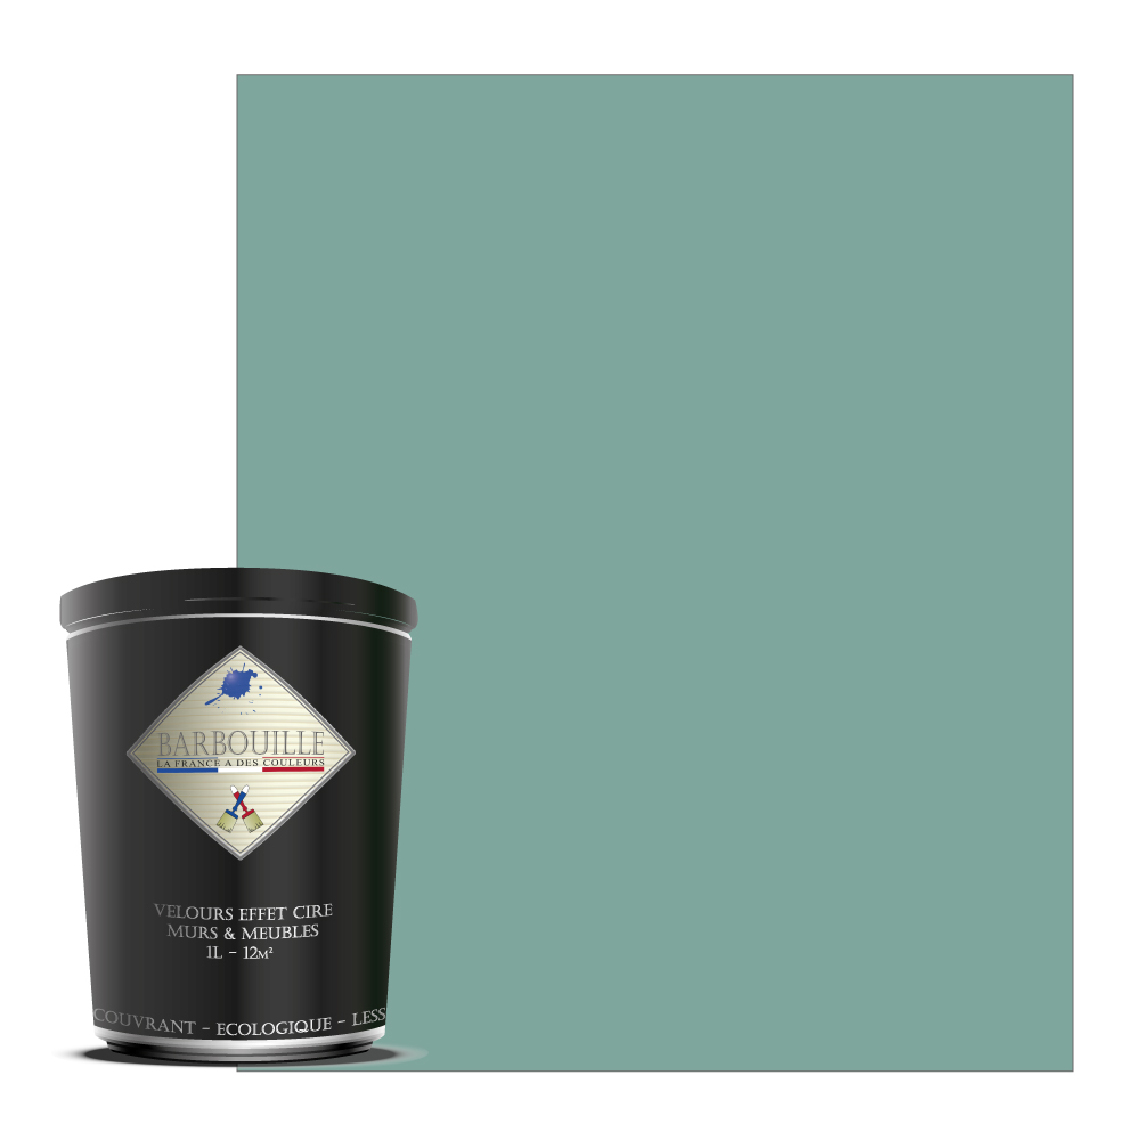 Barbouille - Peinture lessivable acrylique velouté – murs et plafonds - Peinture intérieure